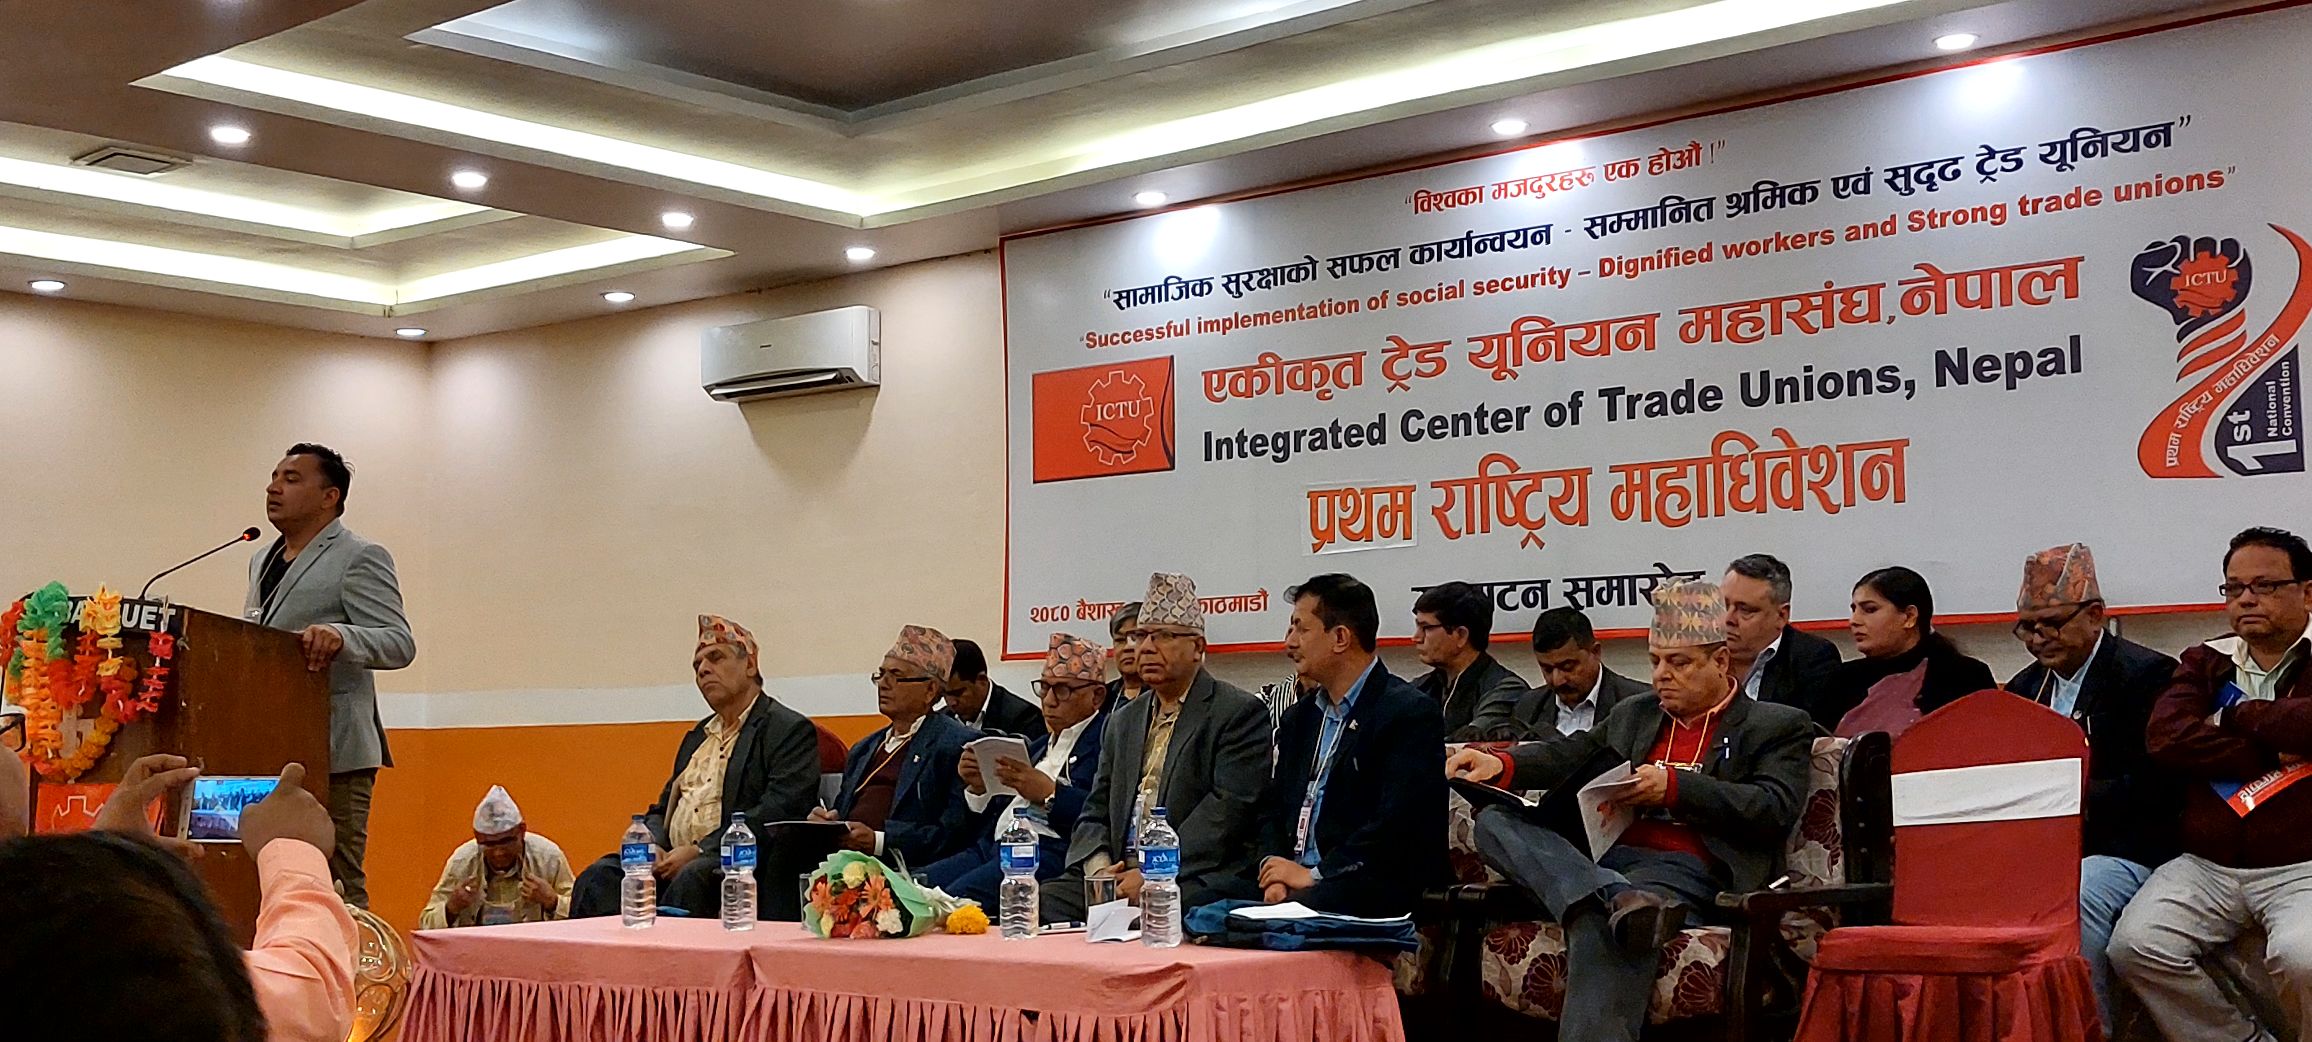 हाम्रो पार्टी सर्वहाराको पक्षमा छः नेपाल